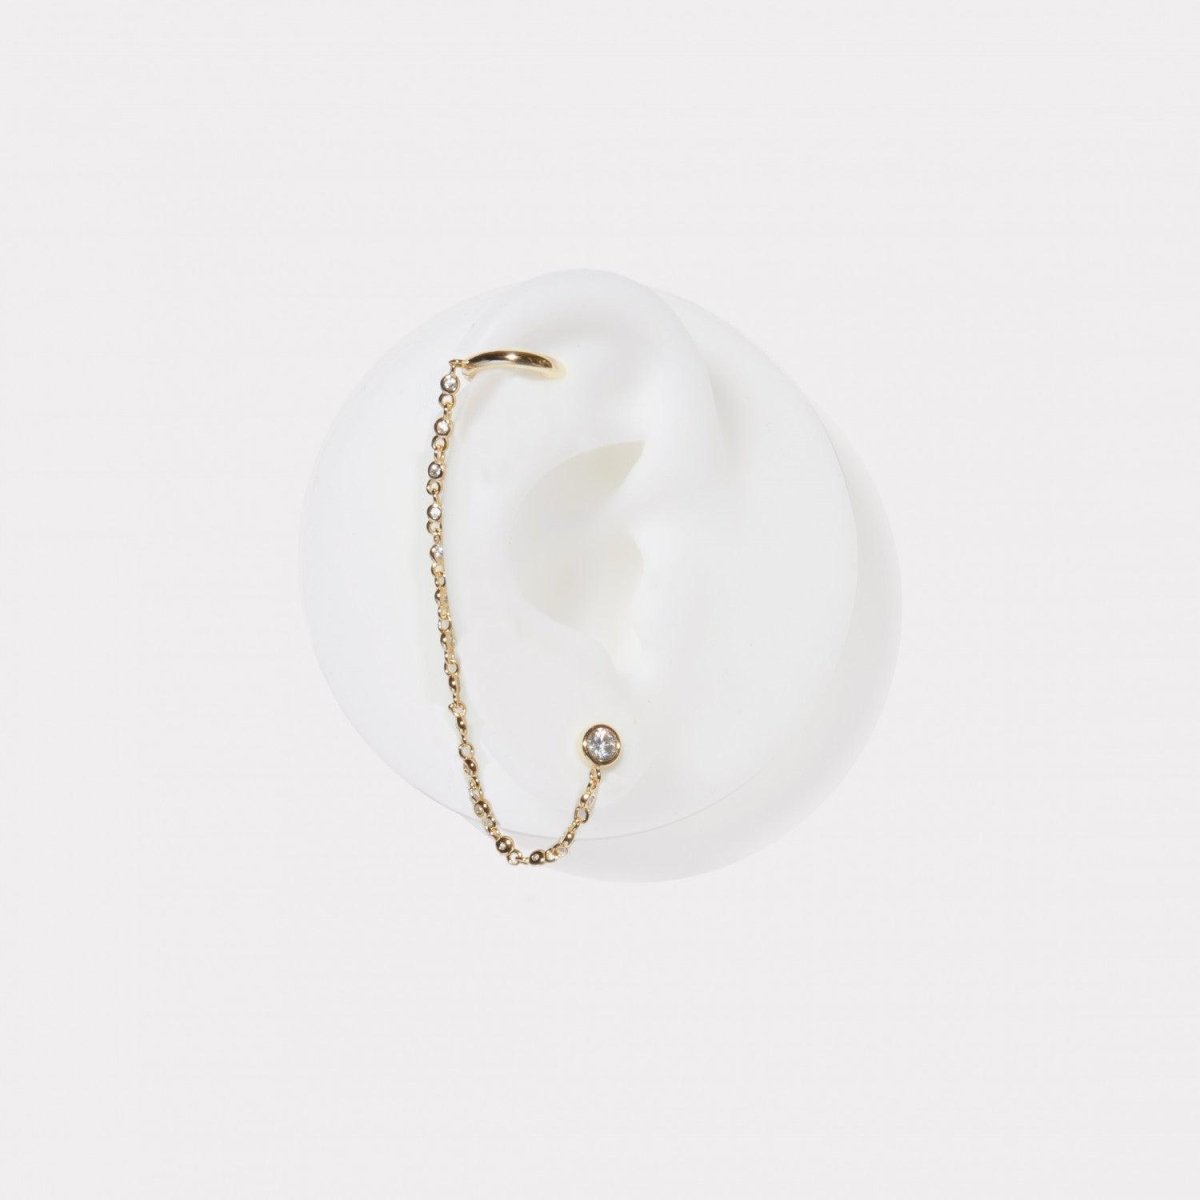 Pendiente · Ear cuff de plata bañada en oro diseño cadena con aro